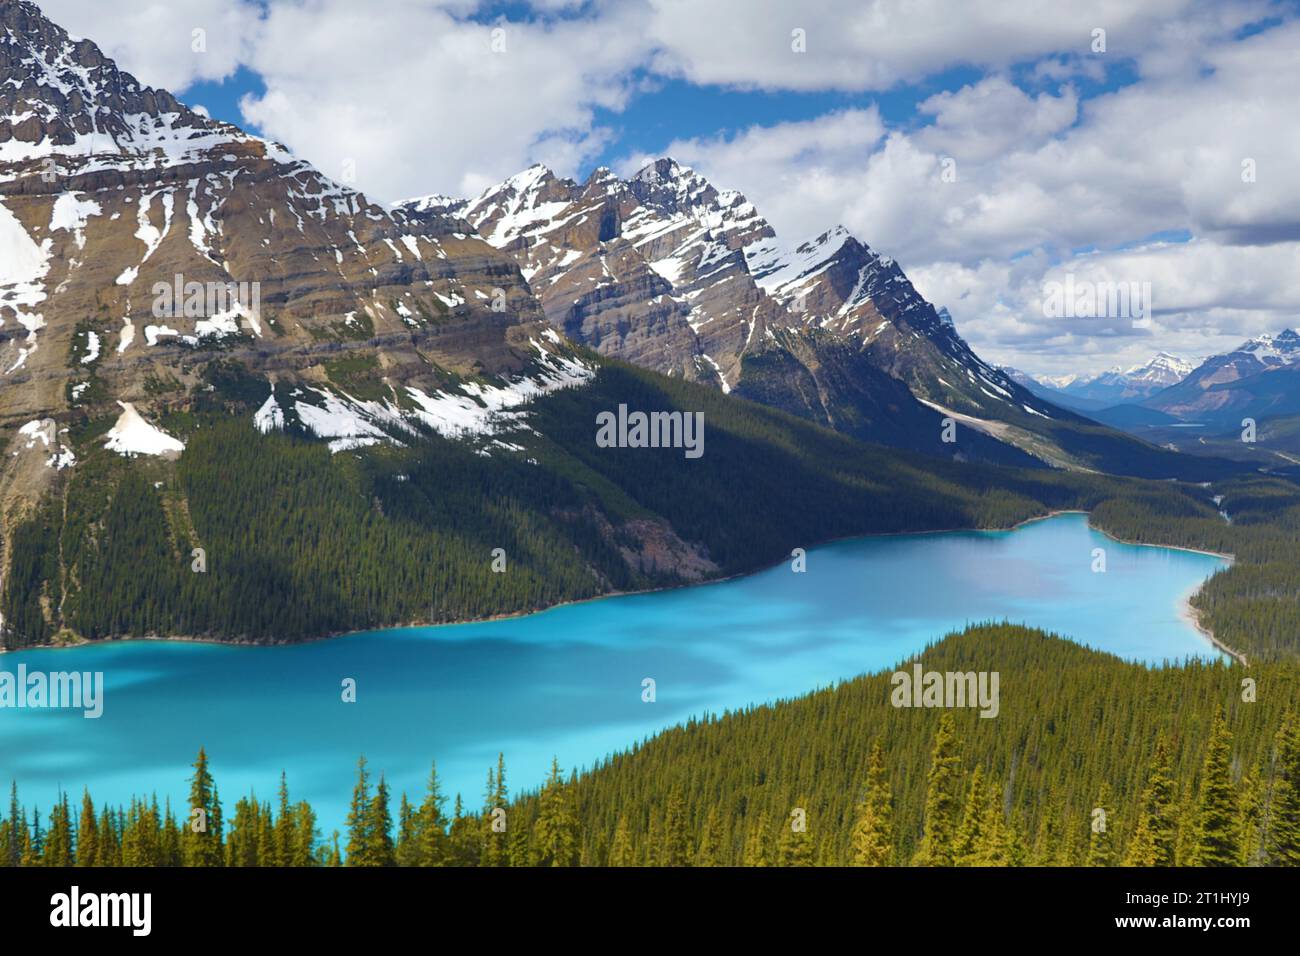 Il lago Peyto è un lago alimentato da ghiacciai nel Banff National Park, nelle Montagne Rocciose canadesi. Il lago stesso è vicino all'Icefields Parkway. Foto Stock